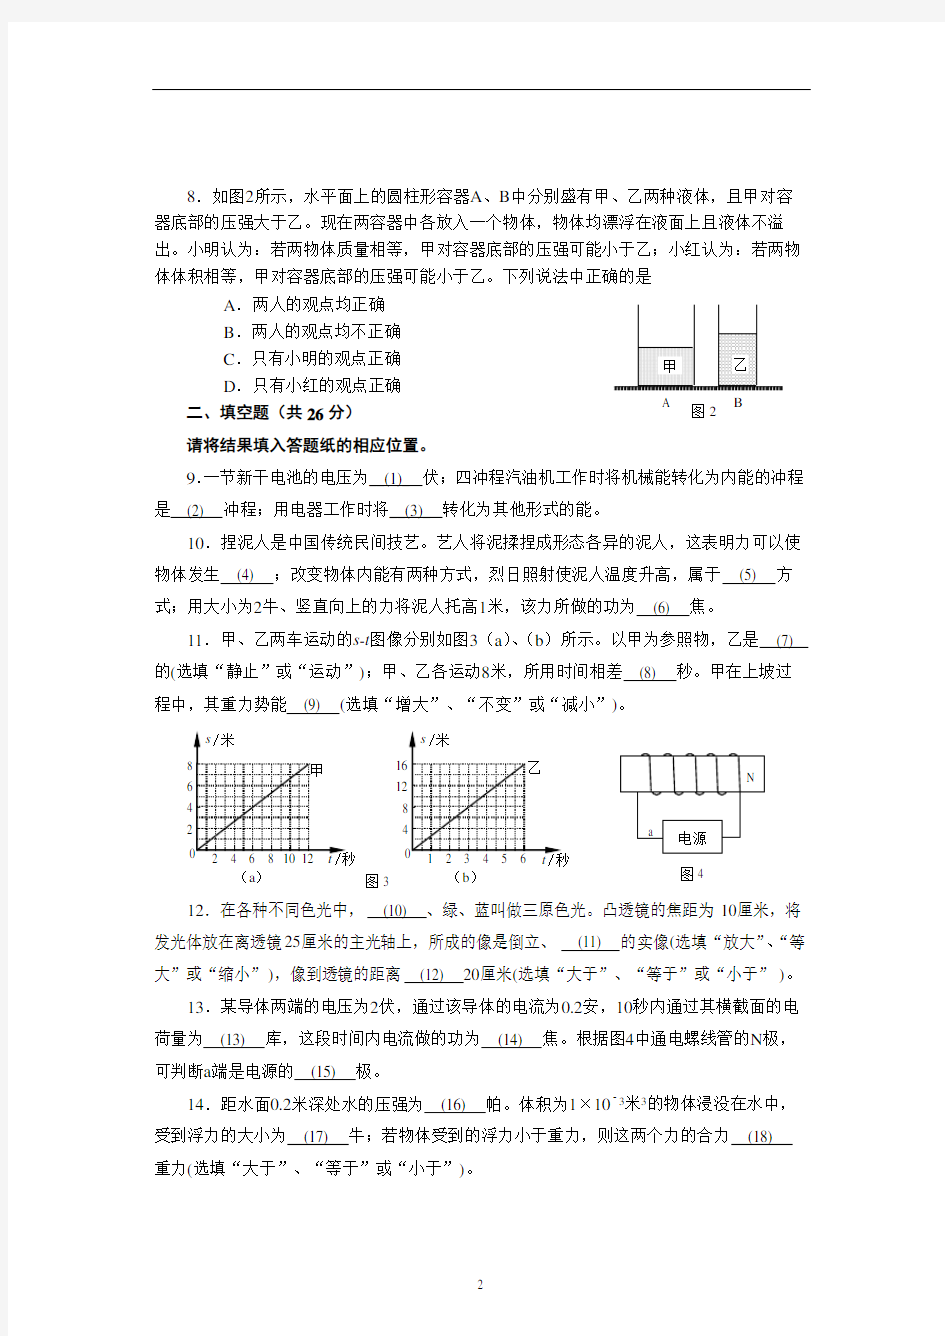 2014上海物理中考试卷及答案